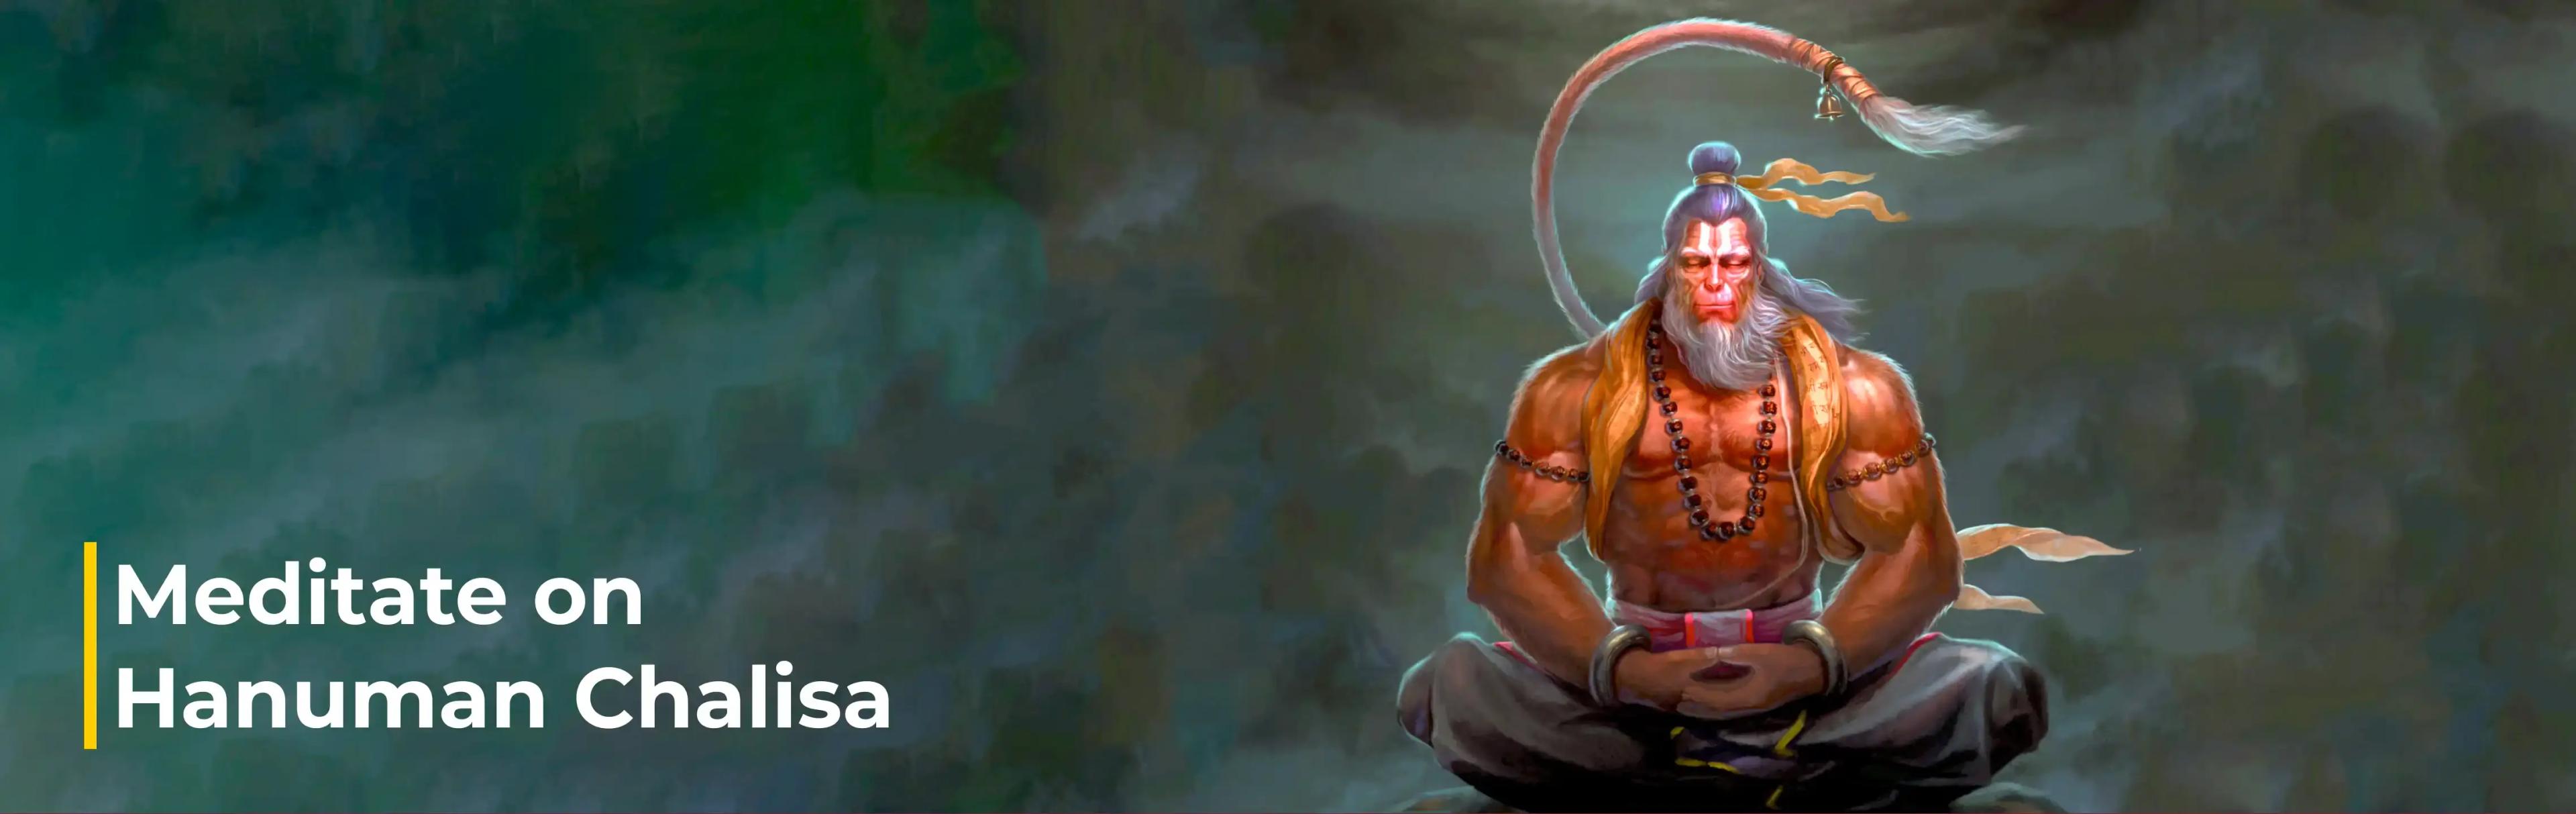 Meditate on Hanuman Chalisa